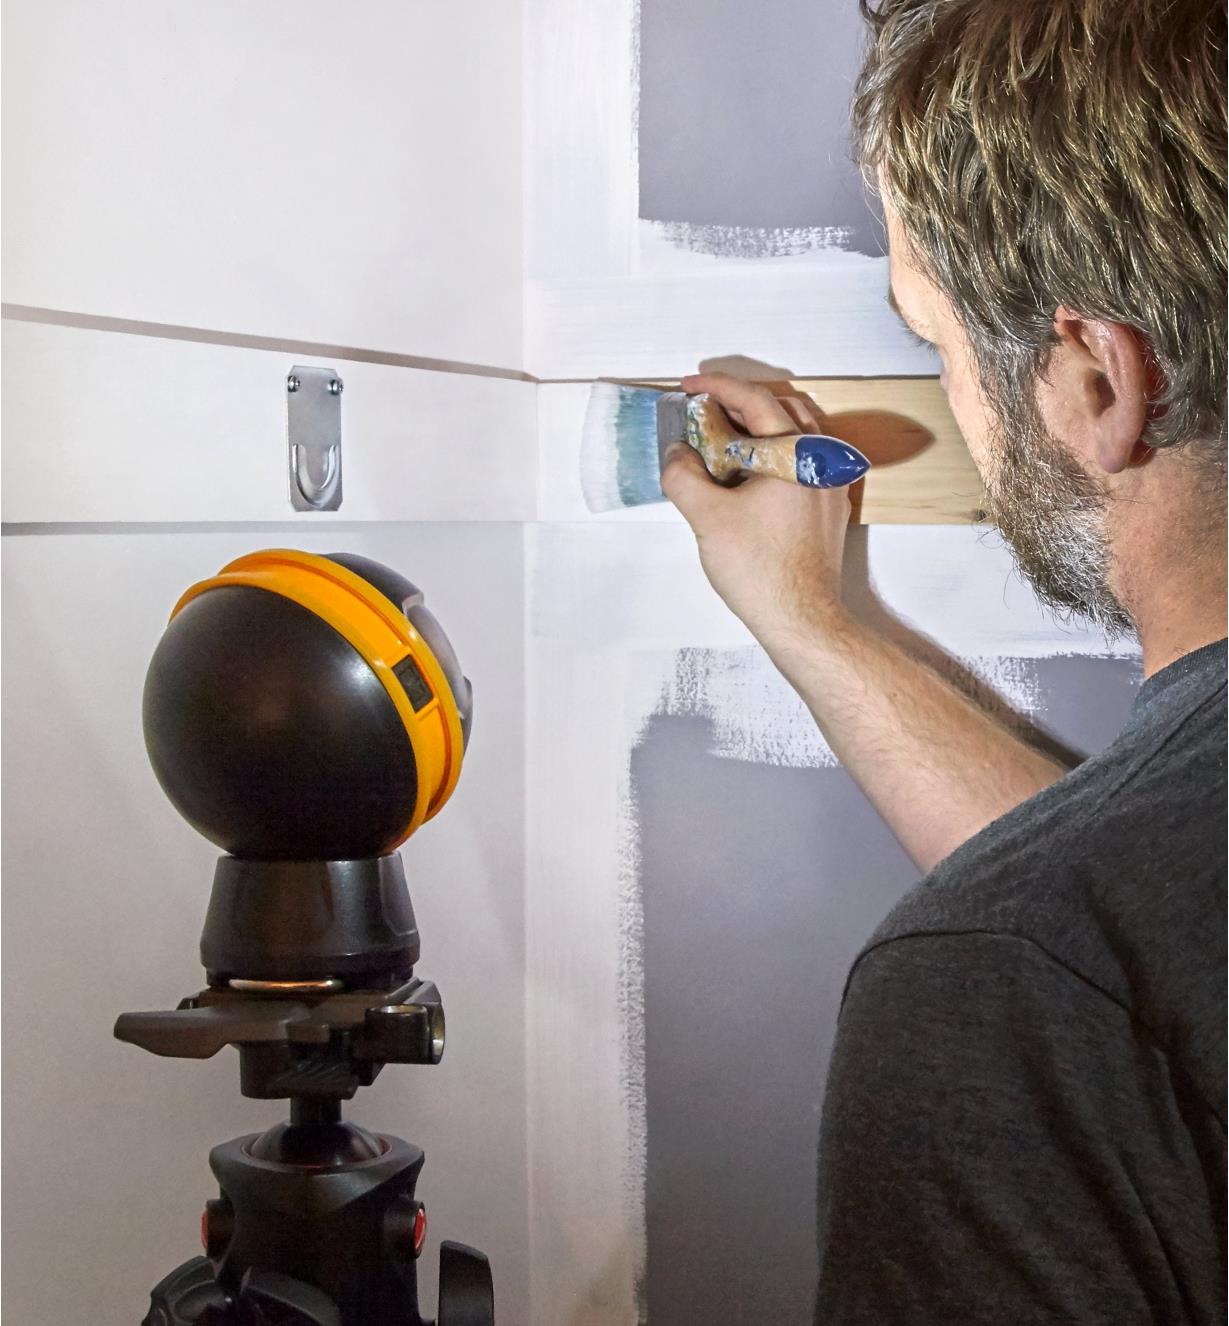 Lampe-sphère rechargeable fixée à un trépied pour éclairer l'intérieur d'un placard afin de le peindre